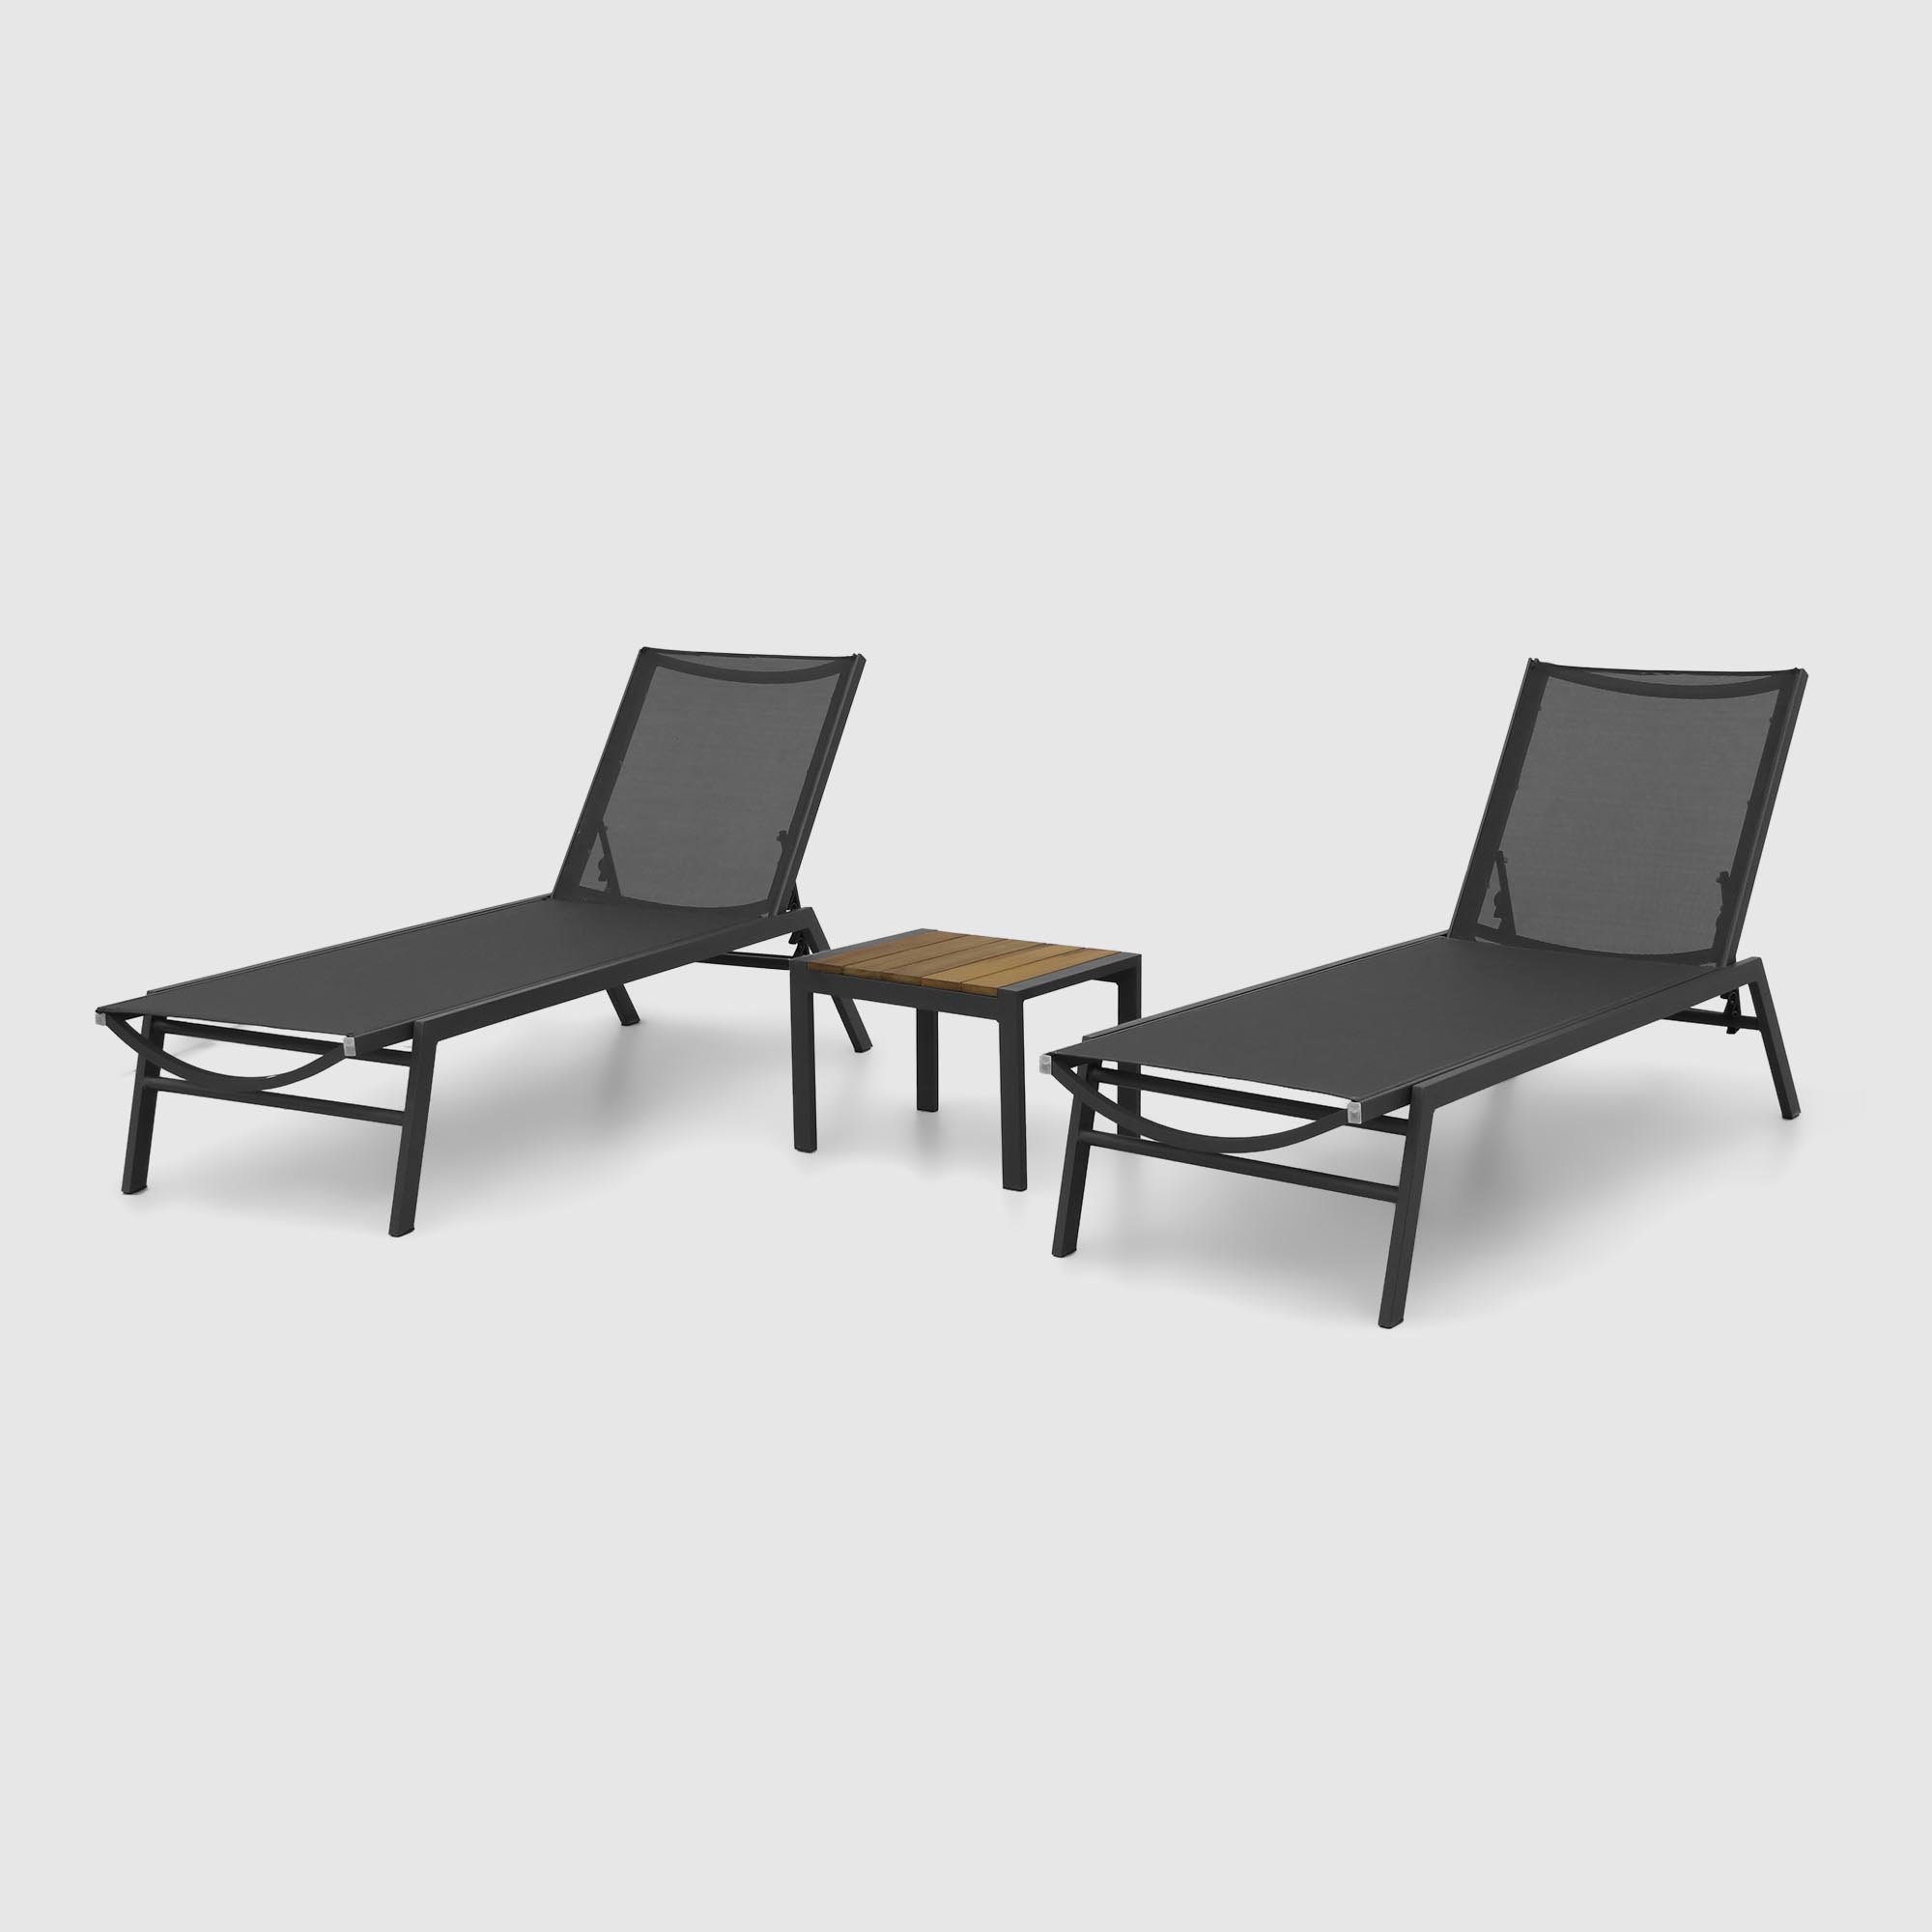 Комплект мебели Emek garden столик и два шезлонга 3 предмета, цвет черный - фото 1